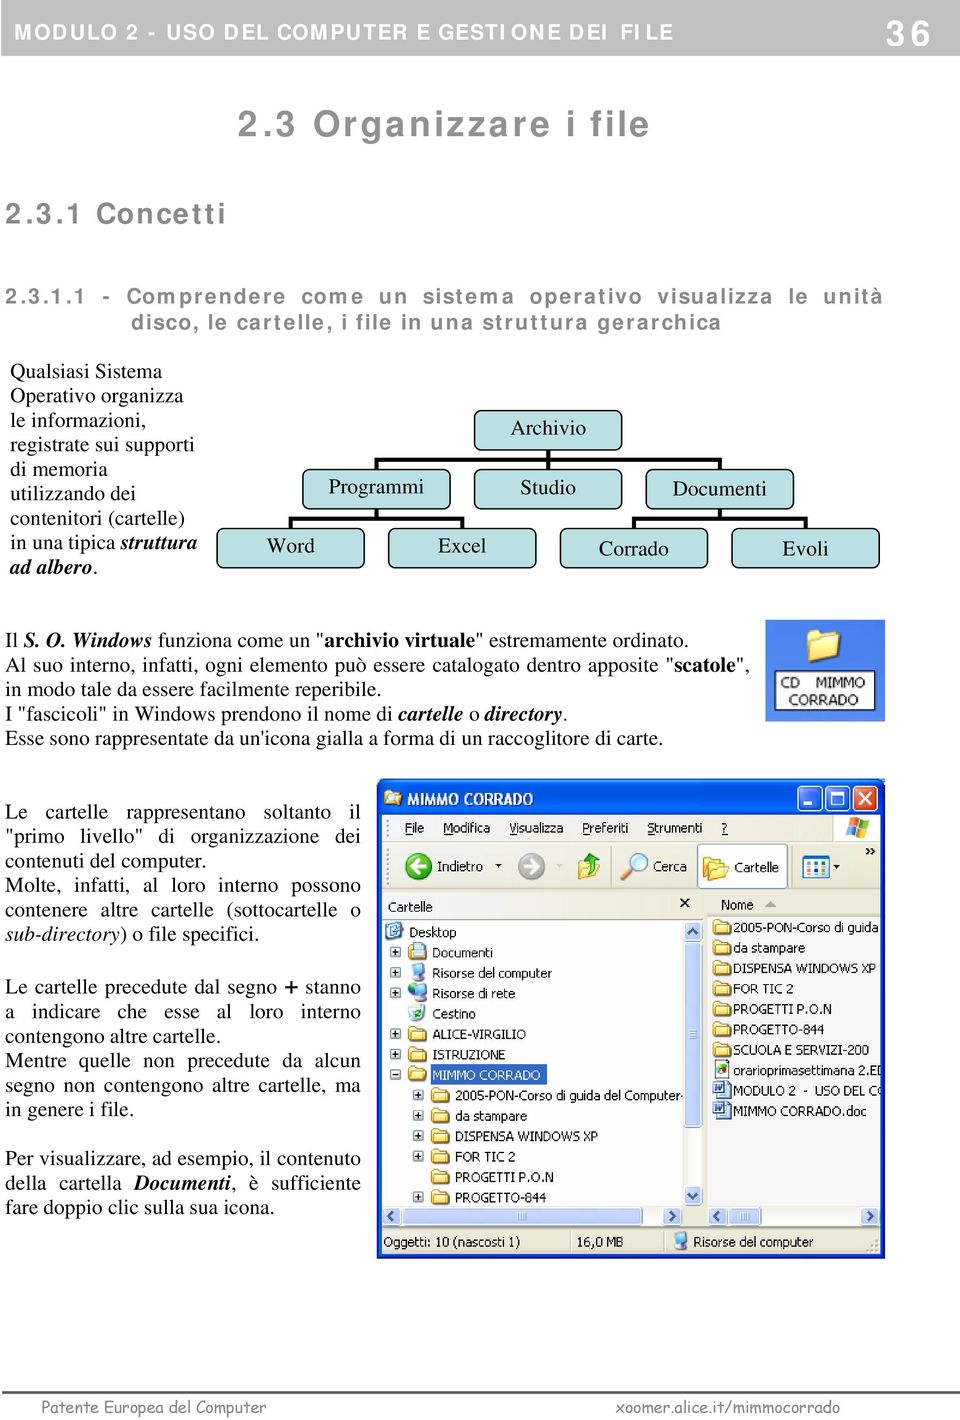 1 - Comprendere come un sistema operativo visualizza le unità disco, le cartelle, i file in una struttura gerarchica Qualsiasi Sistema Operativo organizza le informazioni, registrate sui supporti di